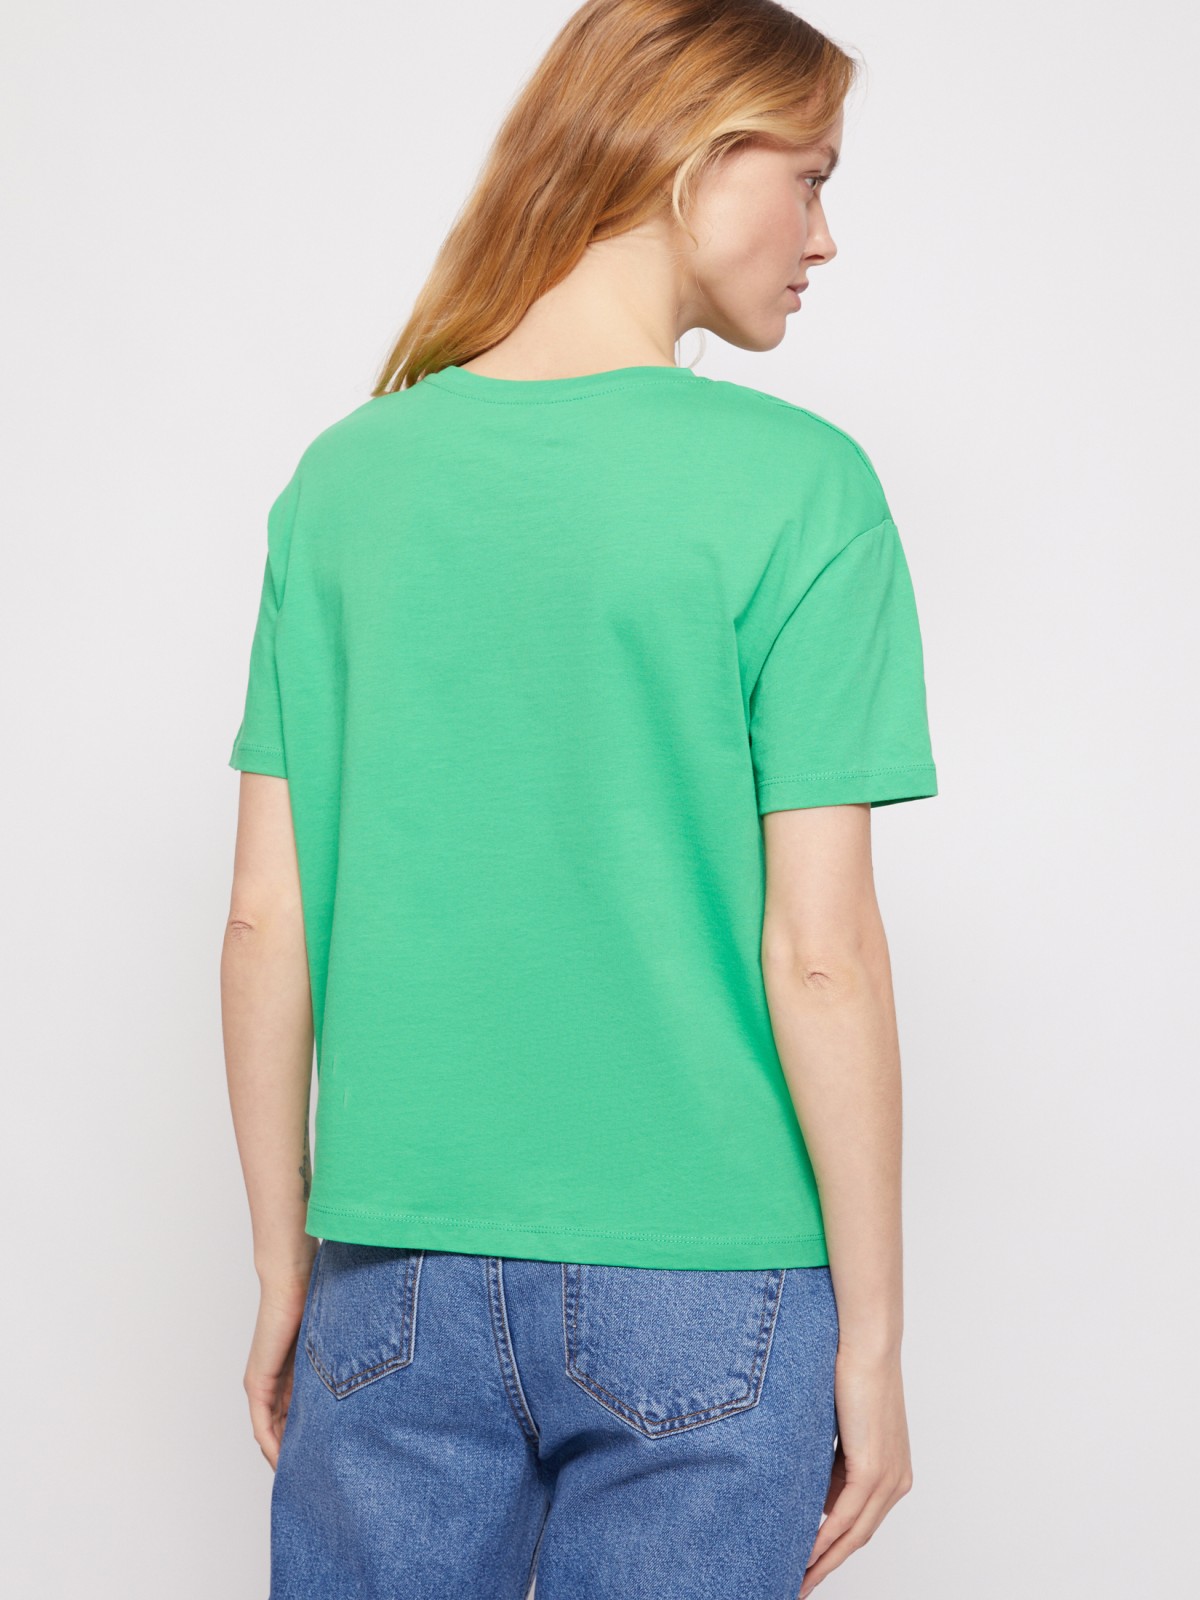 Хлопковая футболка zolla 021213295523, цвет зеленый, размер XS - фото 6